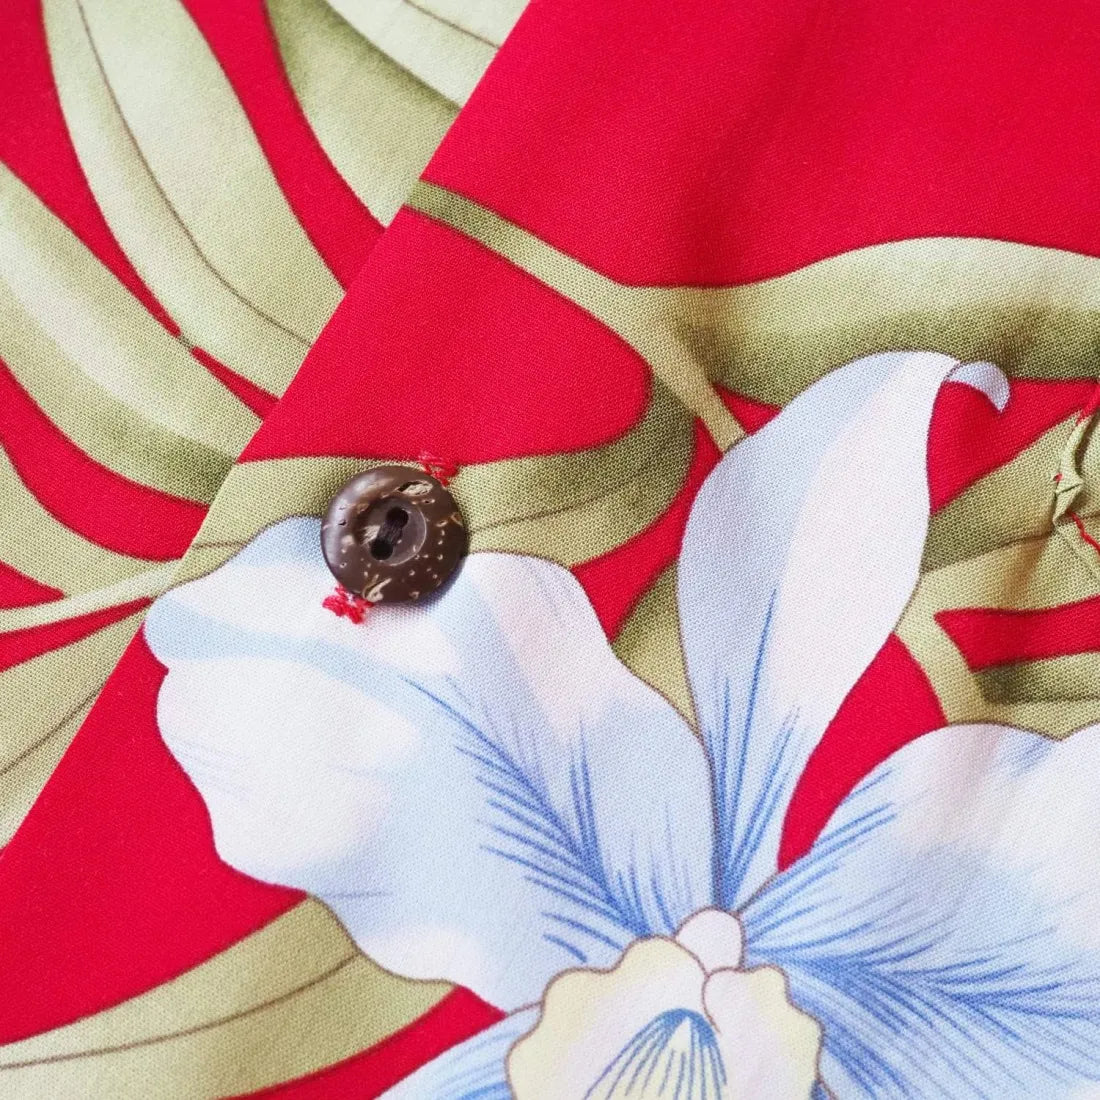 Bamboo Orchid Red Hawaiian Rayon Shirt - Made In Hawaii